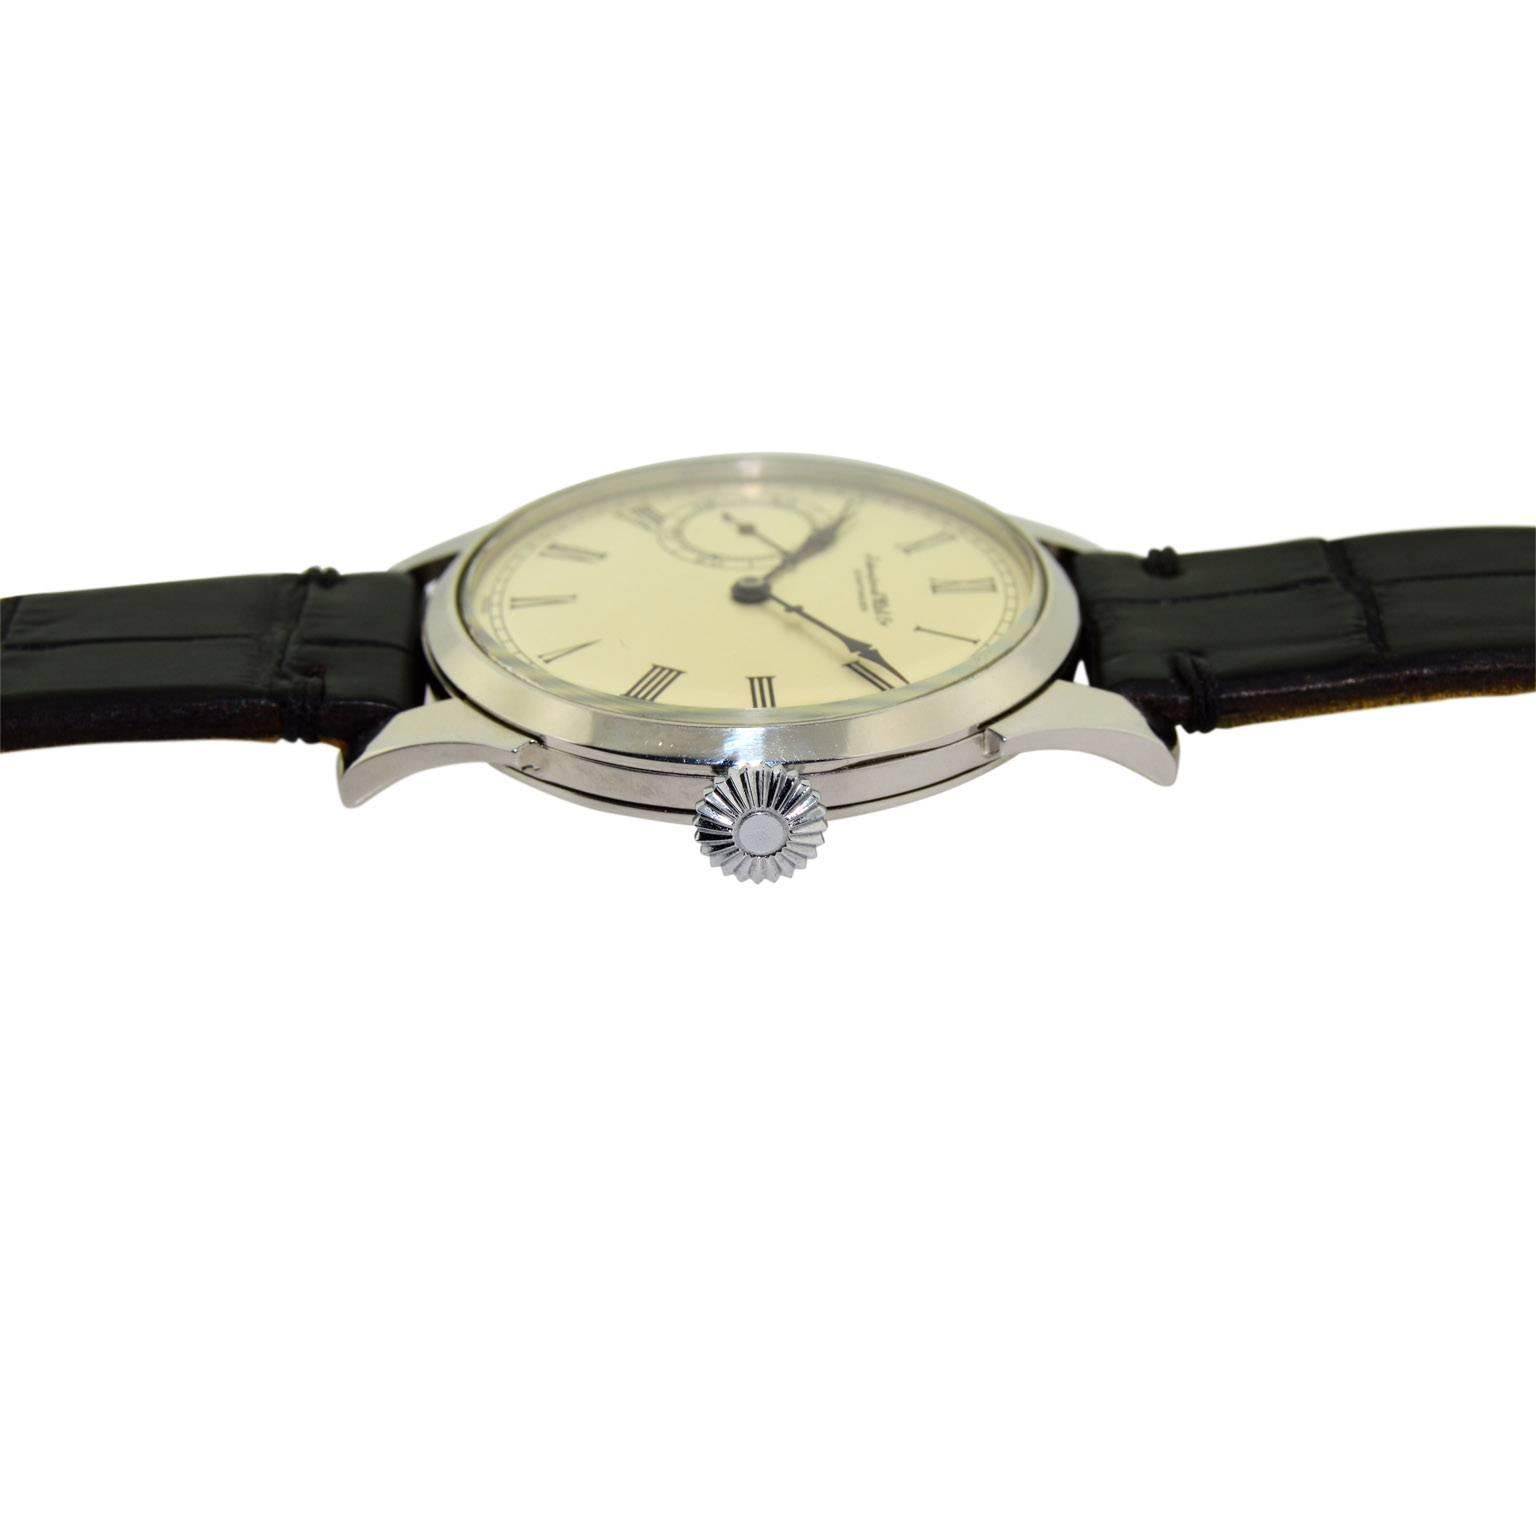 I.W.C. Schaffhausen Stainless Steel Oversized Pocket Watch 3